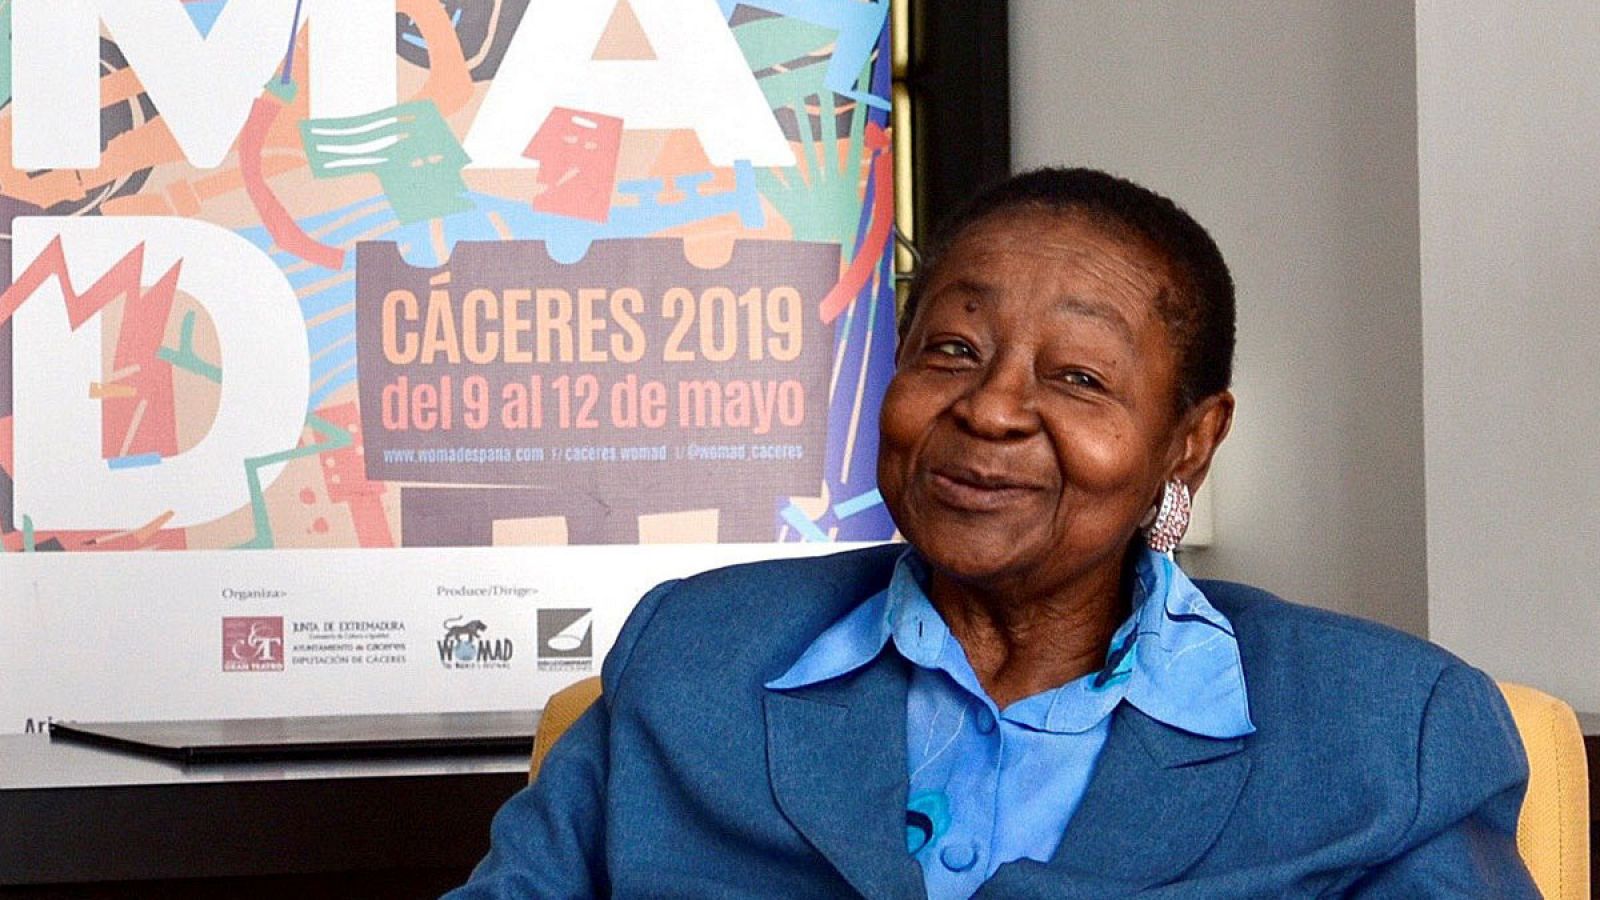 Festival Womad: La veterana Calypso Rose actúa en el Womad de Cáceres